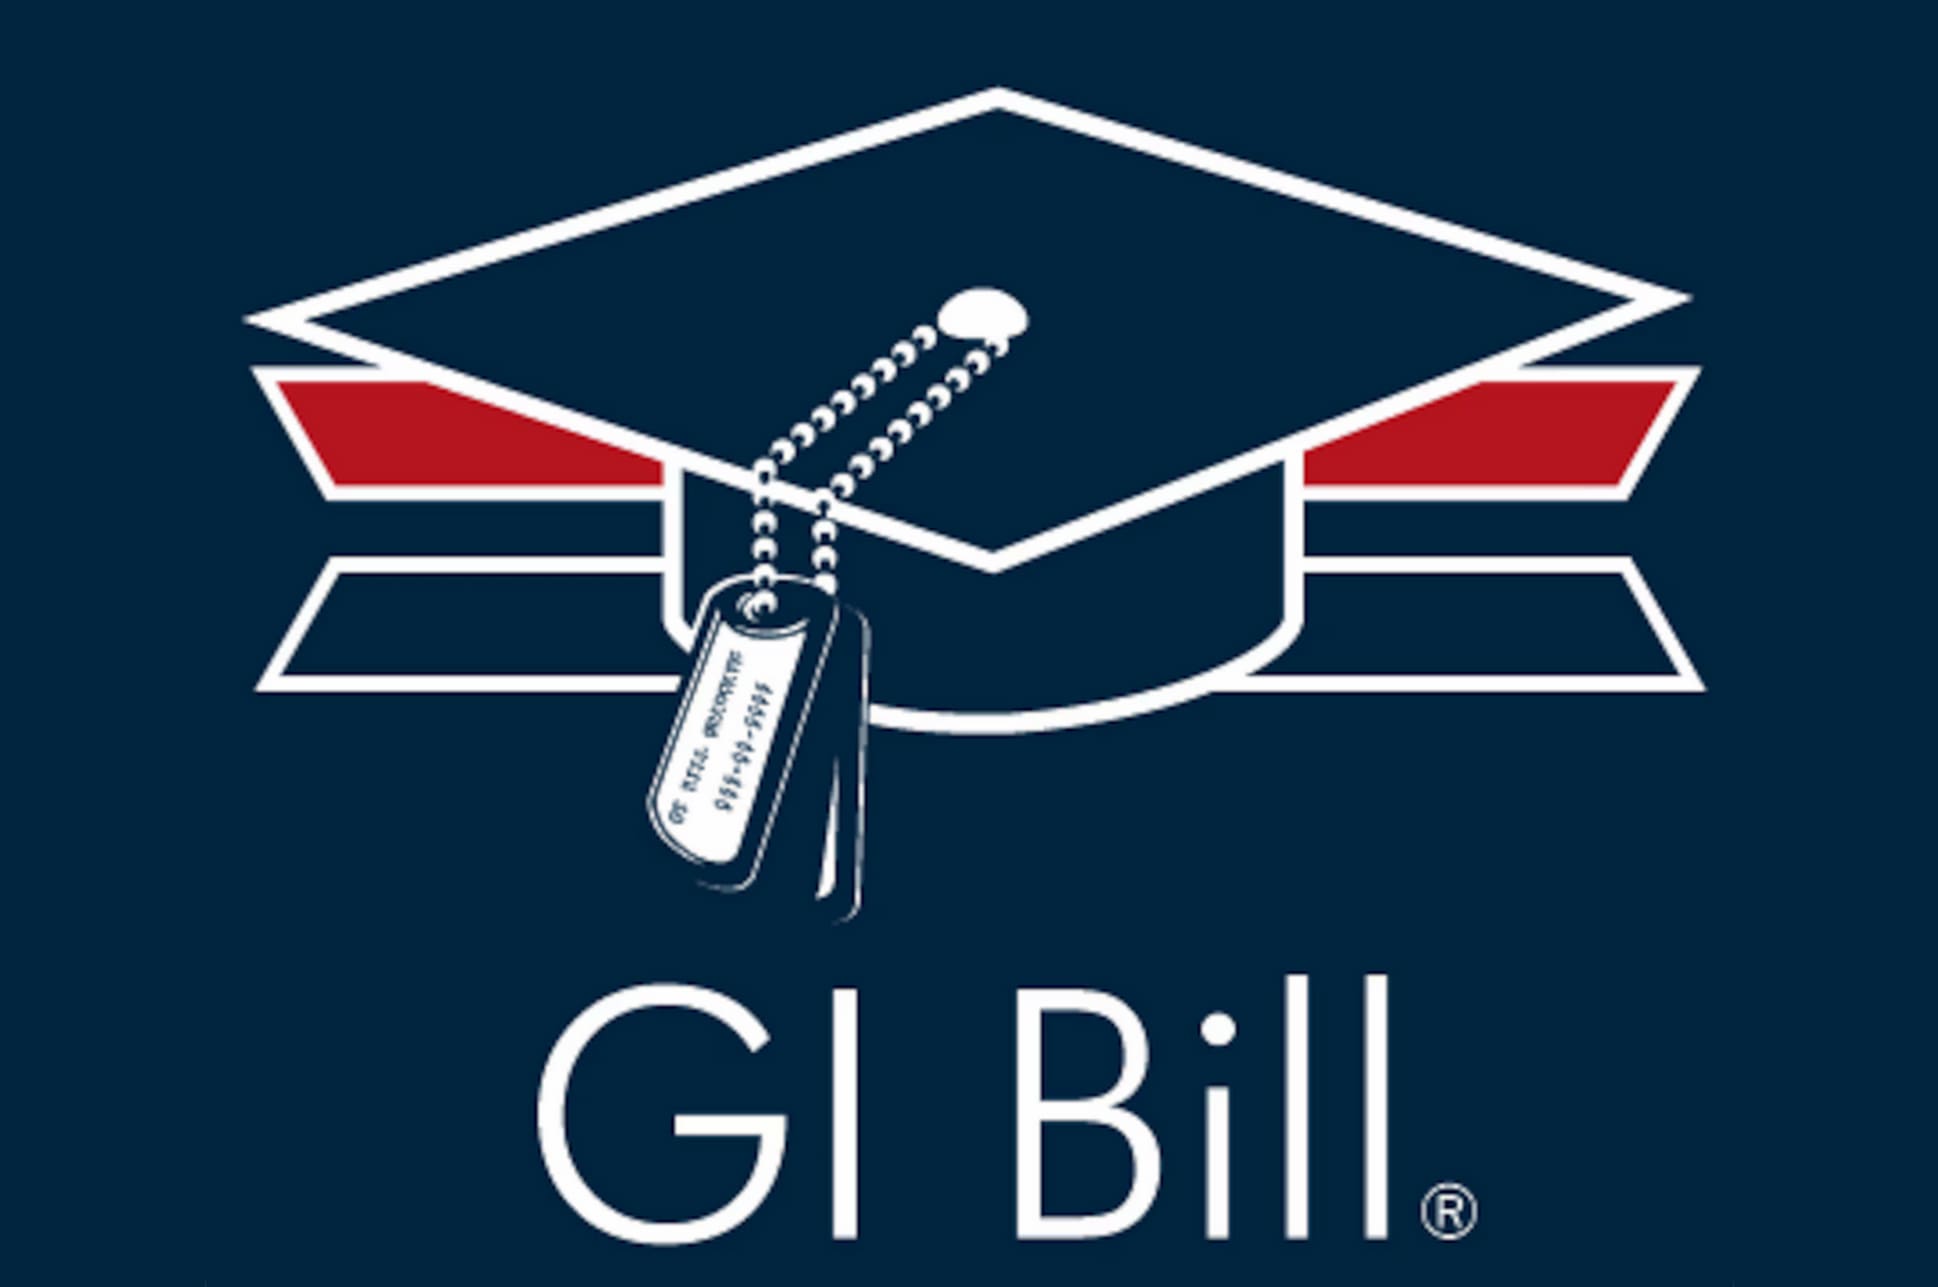 GI BIll logo.